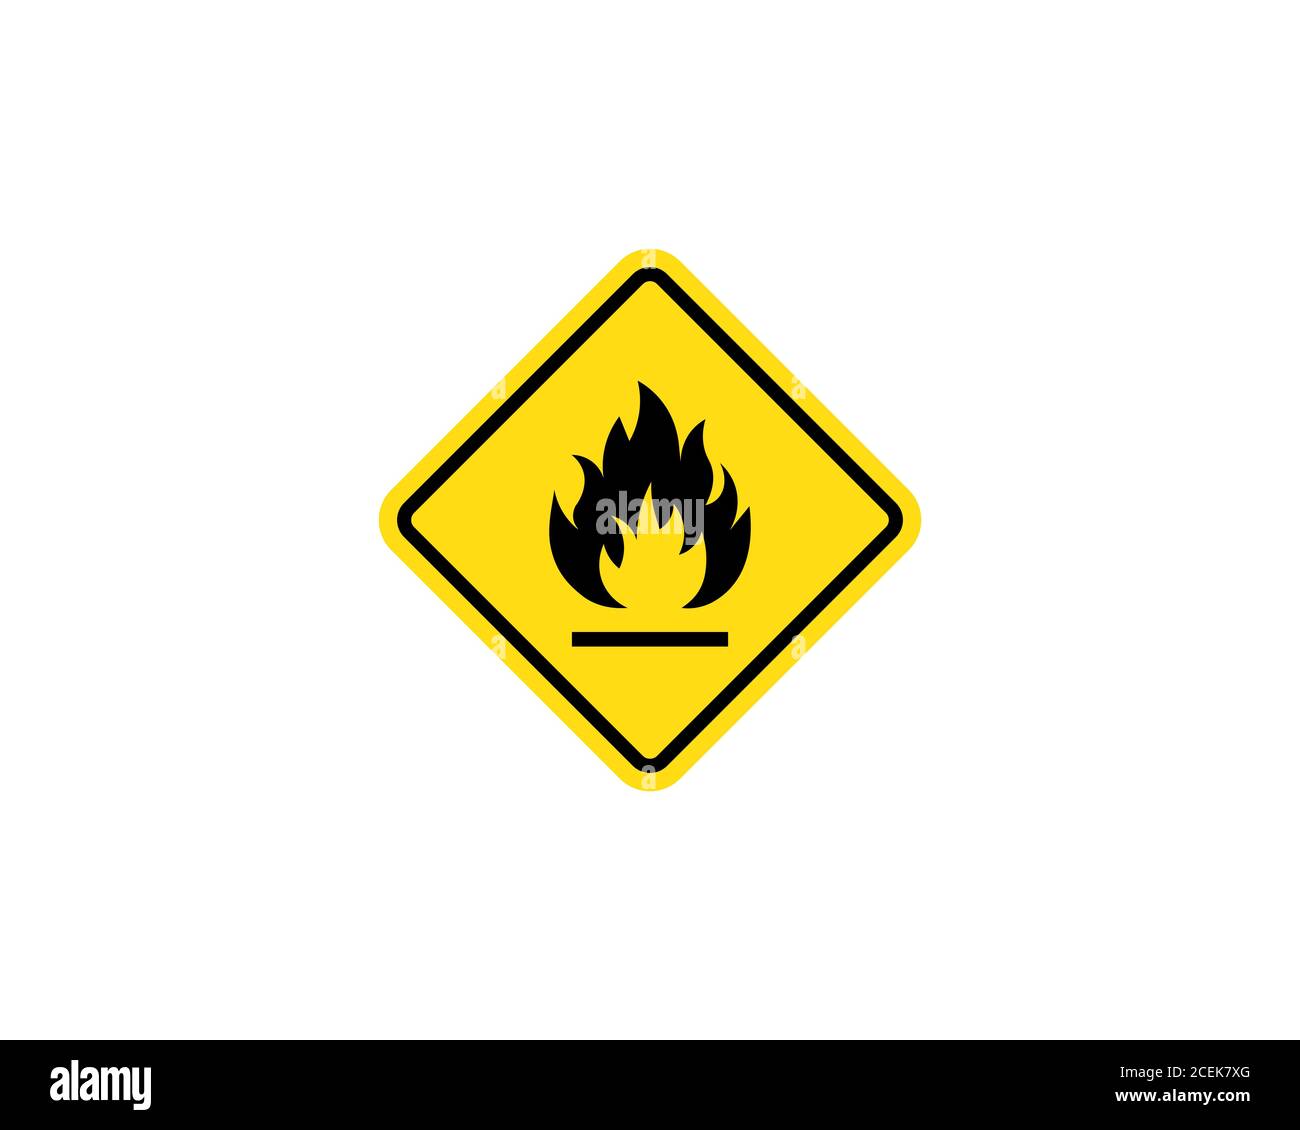 Panneau d'avertissement relatif aux matières inflammables. Panneau d'avertissement d'incendie en triangle jaune. Icône substances inflammables. Vecteur sur fond blanc isolé. SPE 10 Illustration de Vecteur